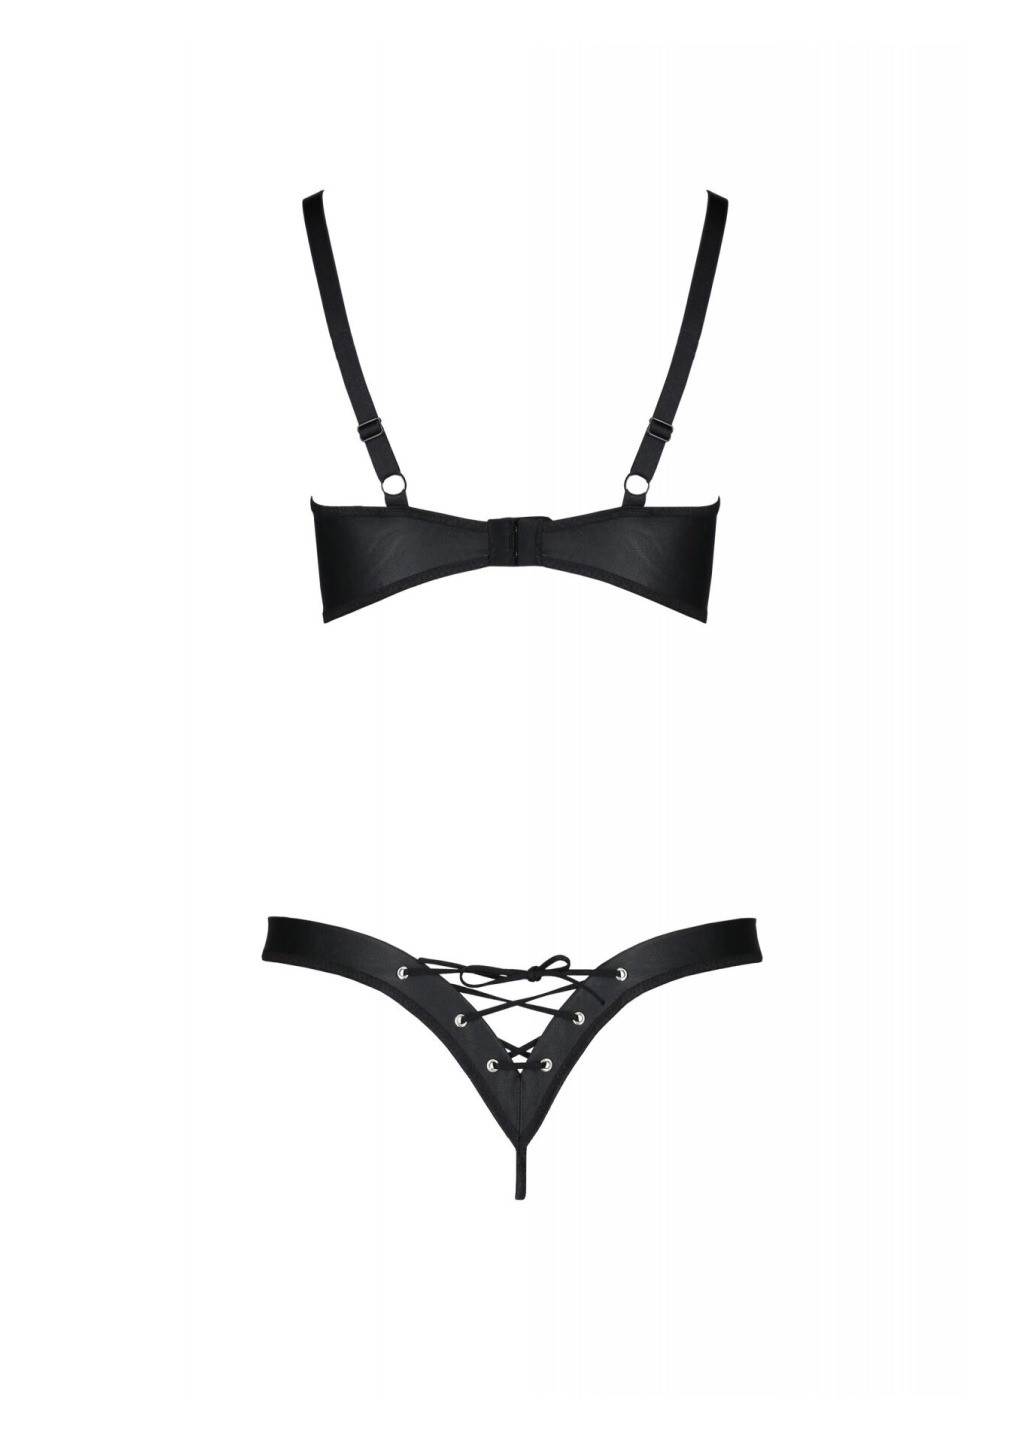 Прозрачный демисезонный комплект из экокожи celine bikini 6xl/7xl black, открытый бра, стринги со шнуровкой Passion